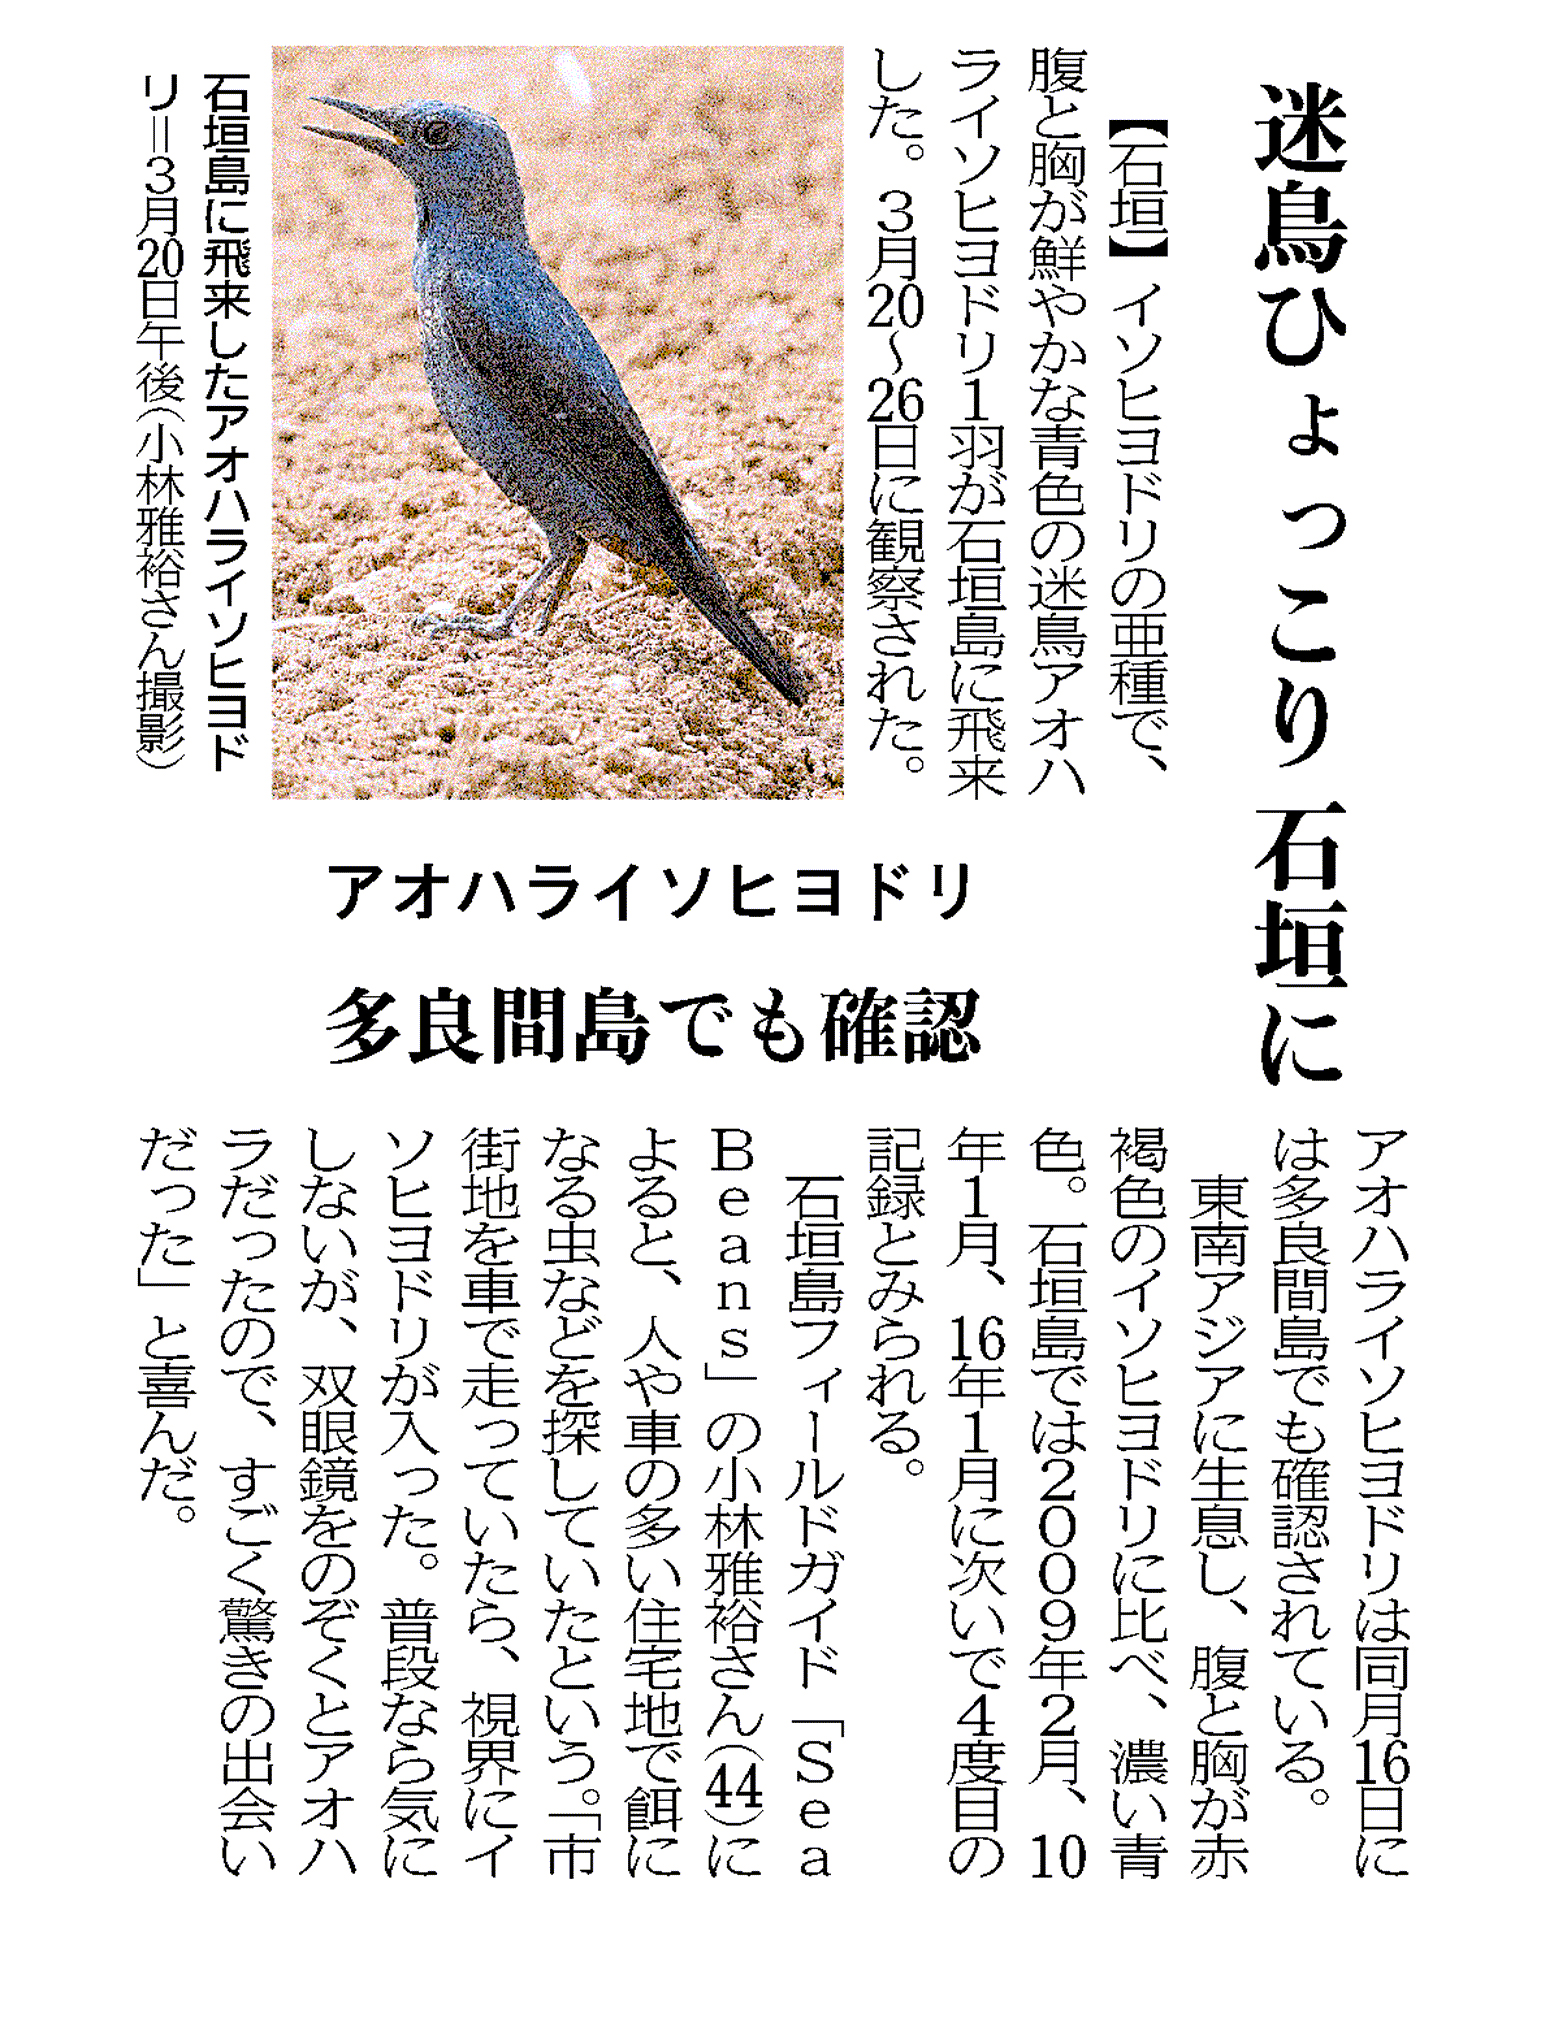 迷鳥ひょっこり　石垣に／アオハライソヒヨドリ／多良間島でも確認、沖縄タイムス朝刊